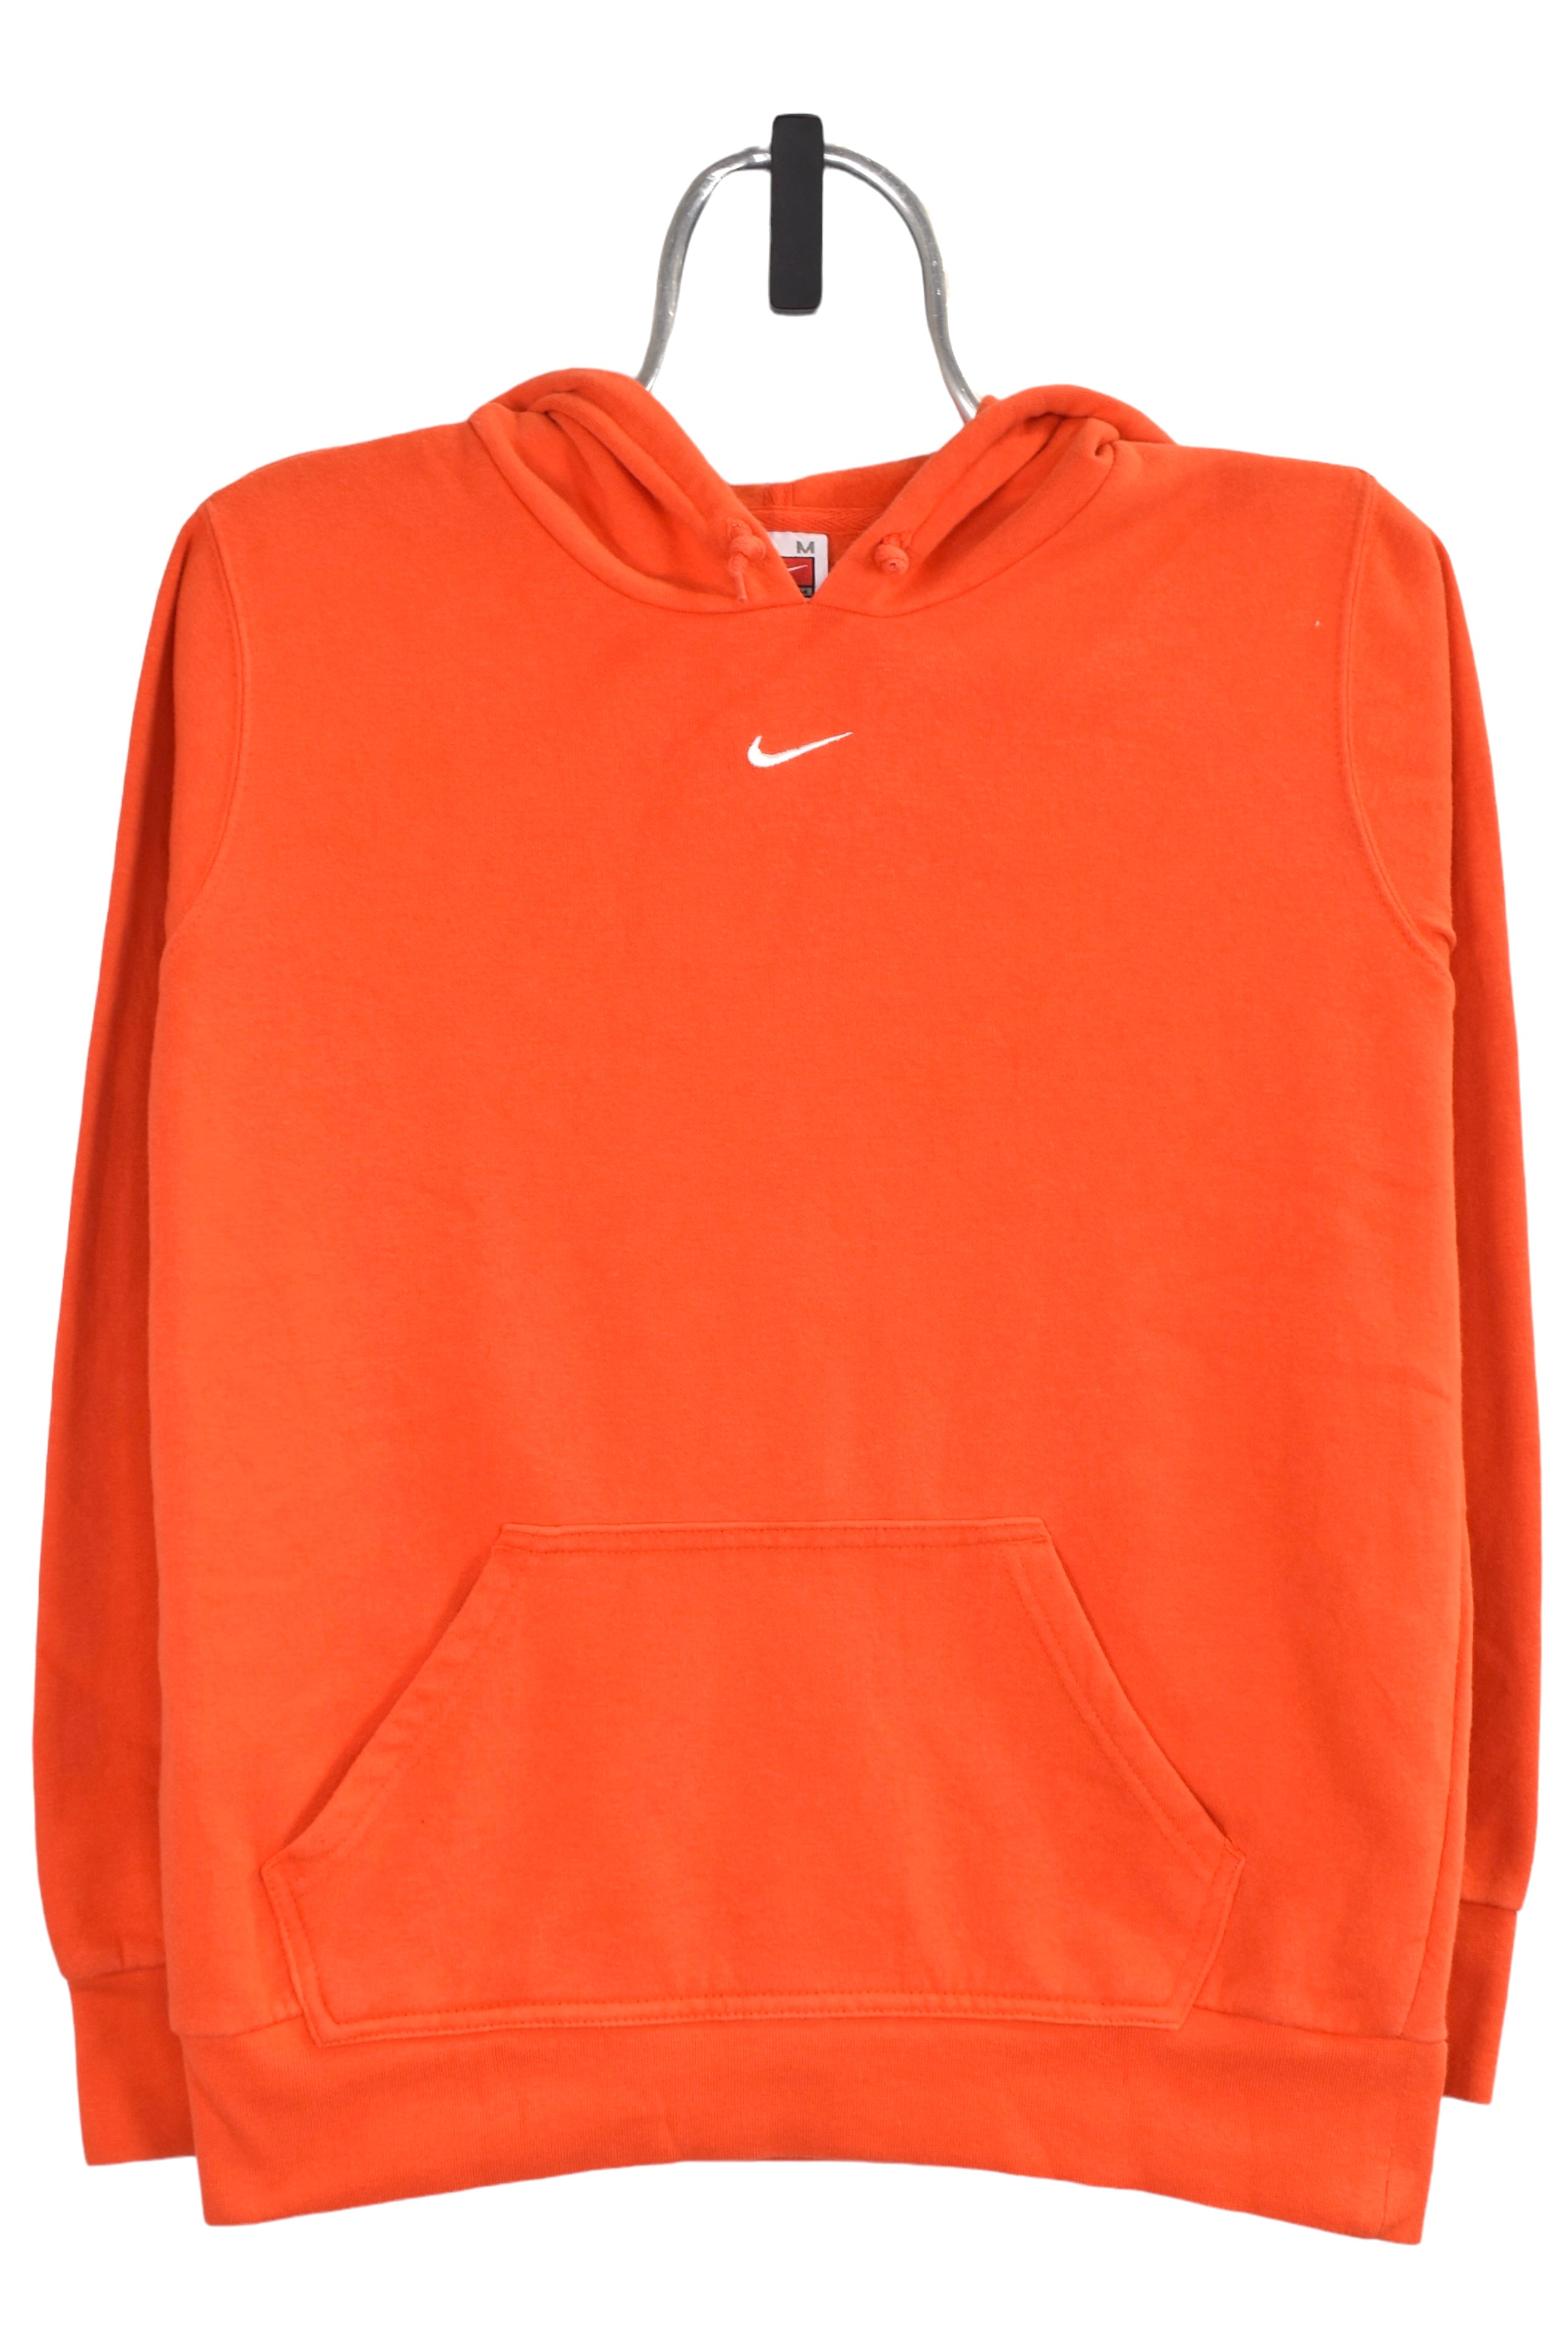 Vintage Nike hoodie (S), orange centre swoosh sweatshirt